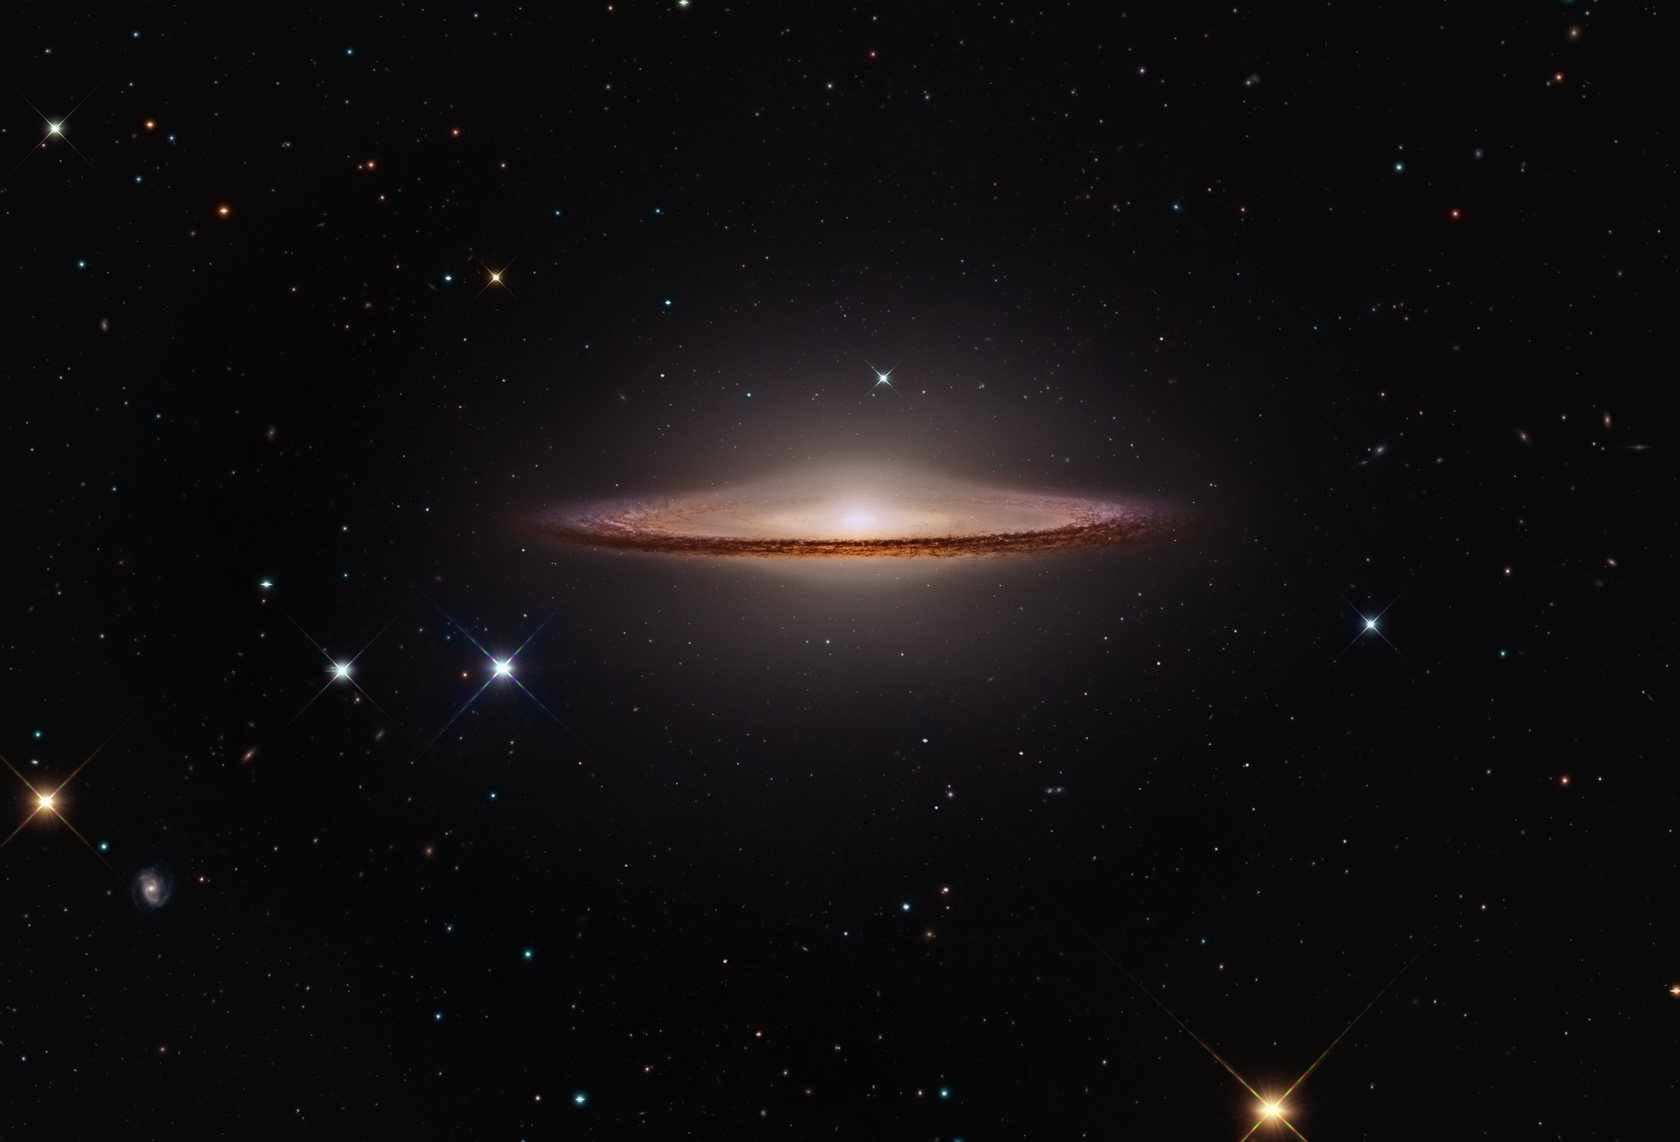  La Galaxia del Sombrero. Fuente: Giovanni Paglioli/NASA